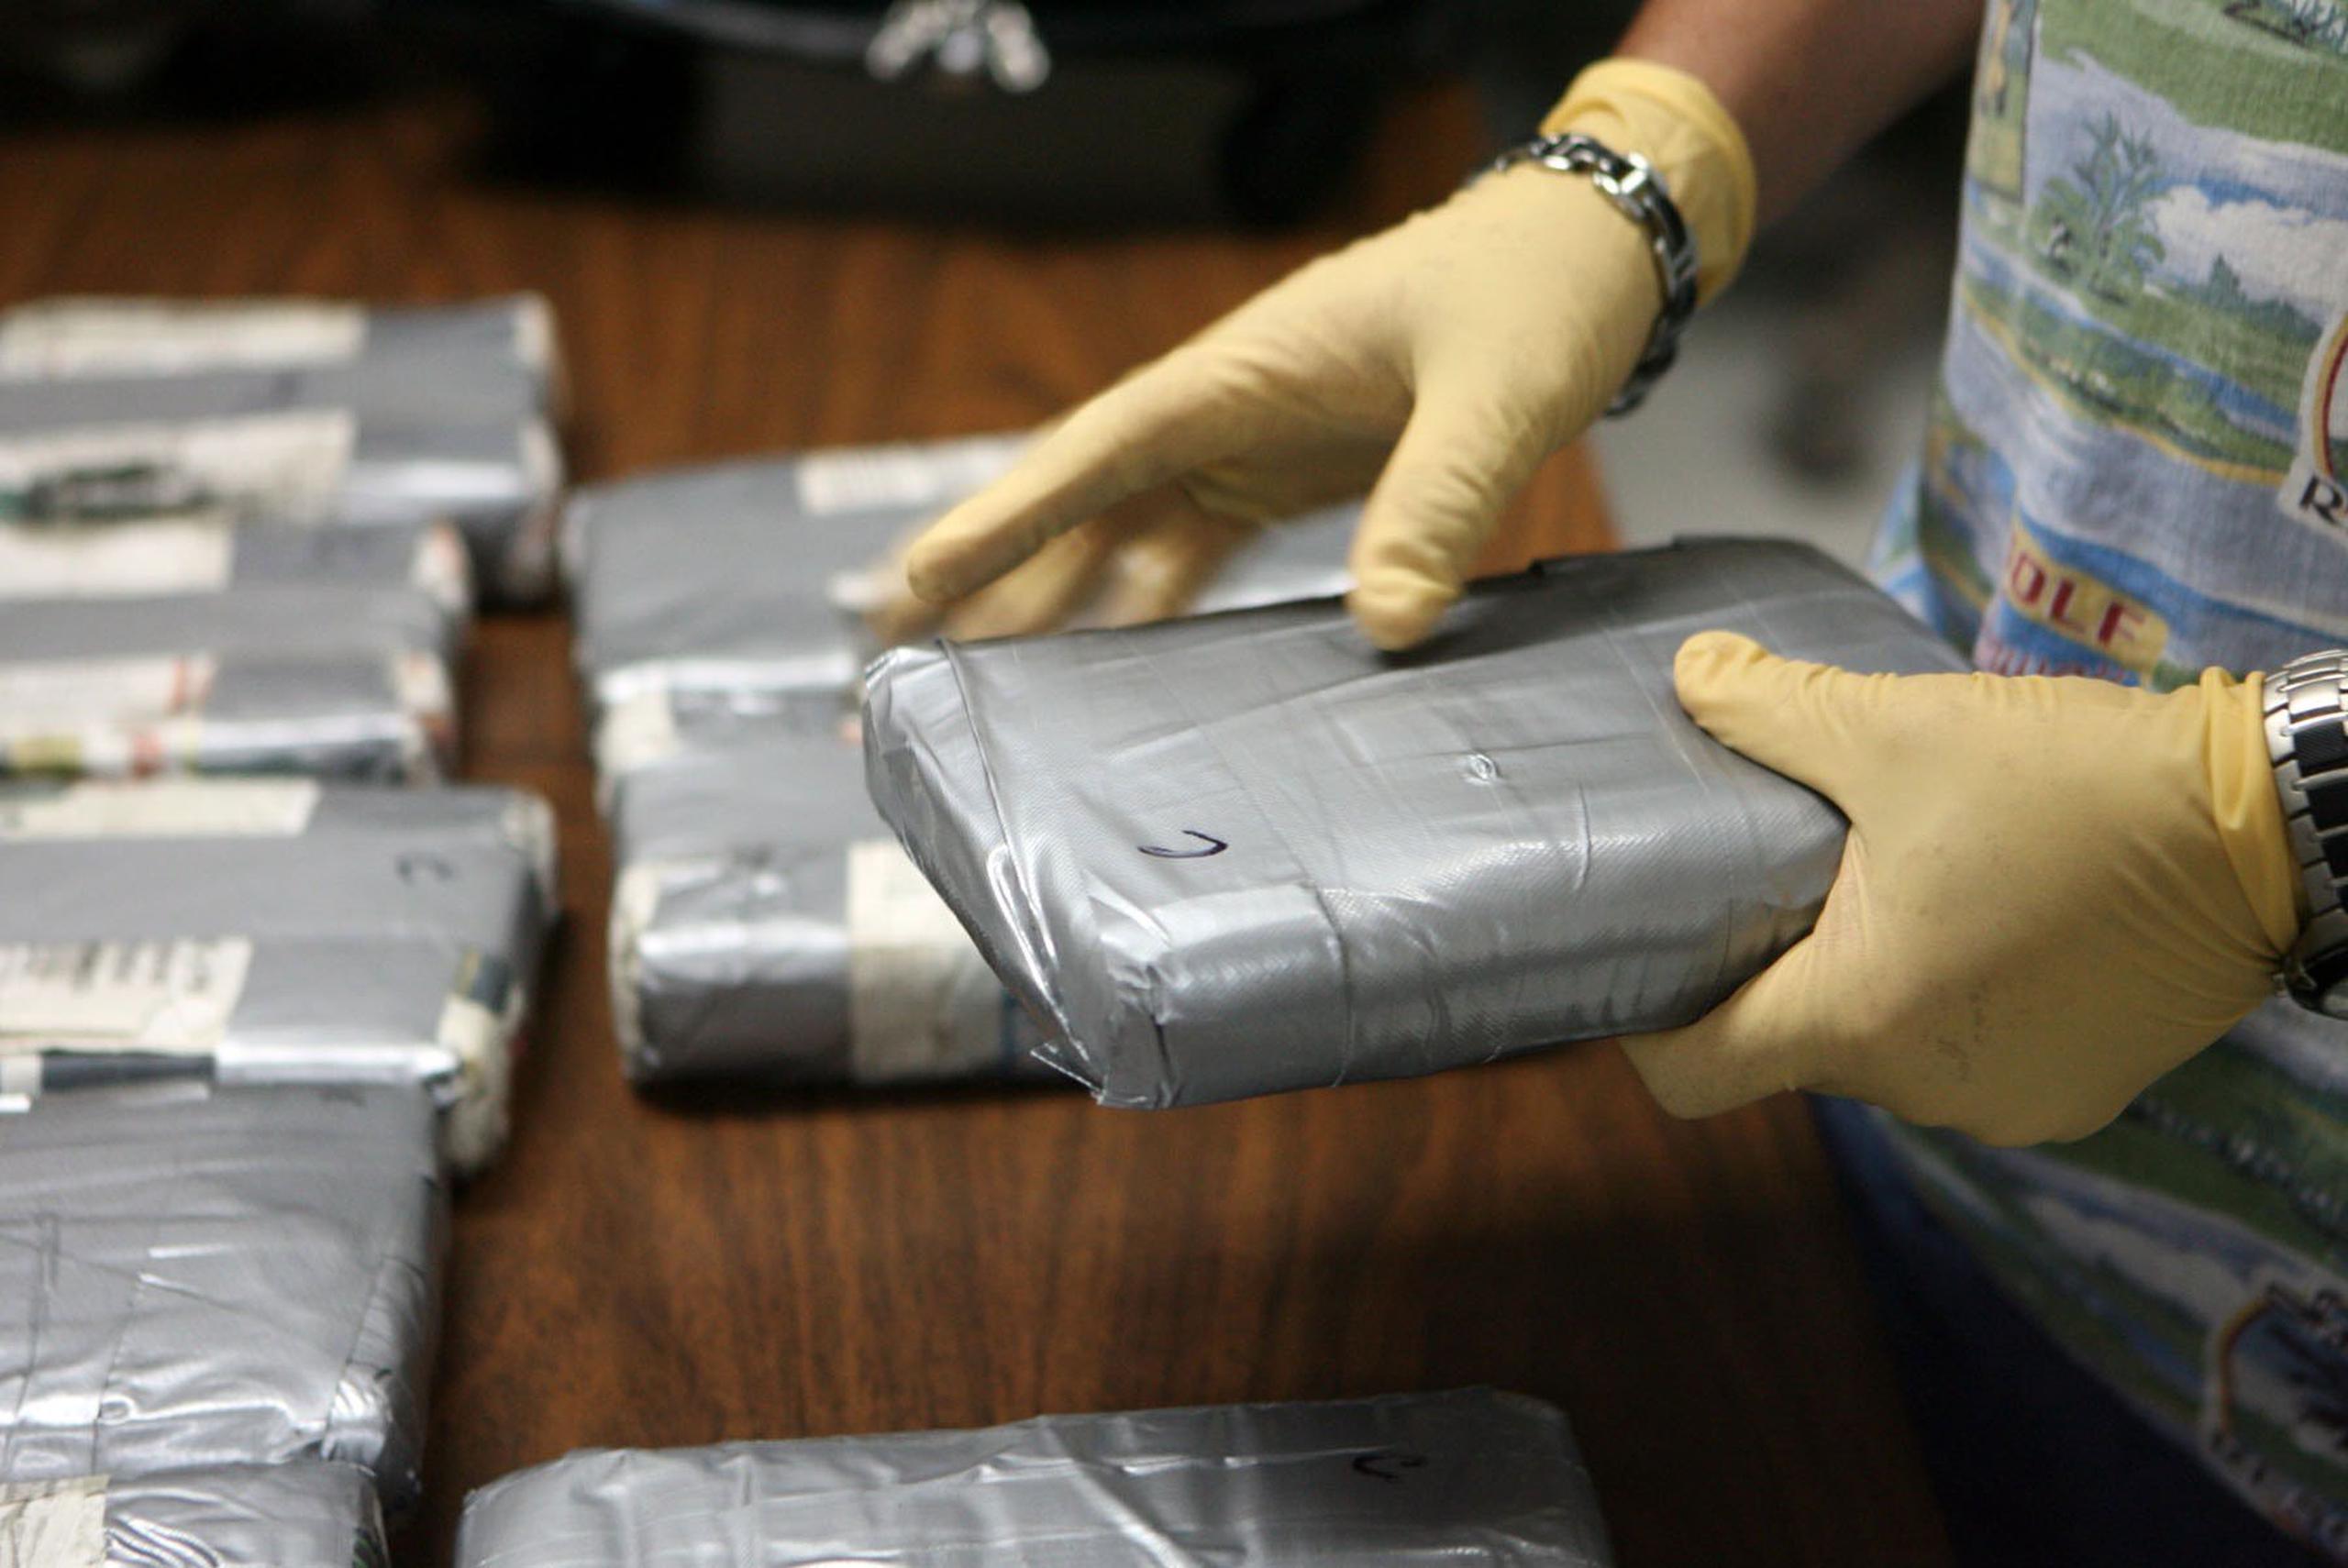 El cargamento de cocaína estaba valorado en un millón de dólares. (GFR Media)